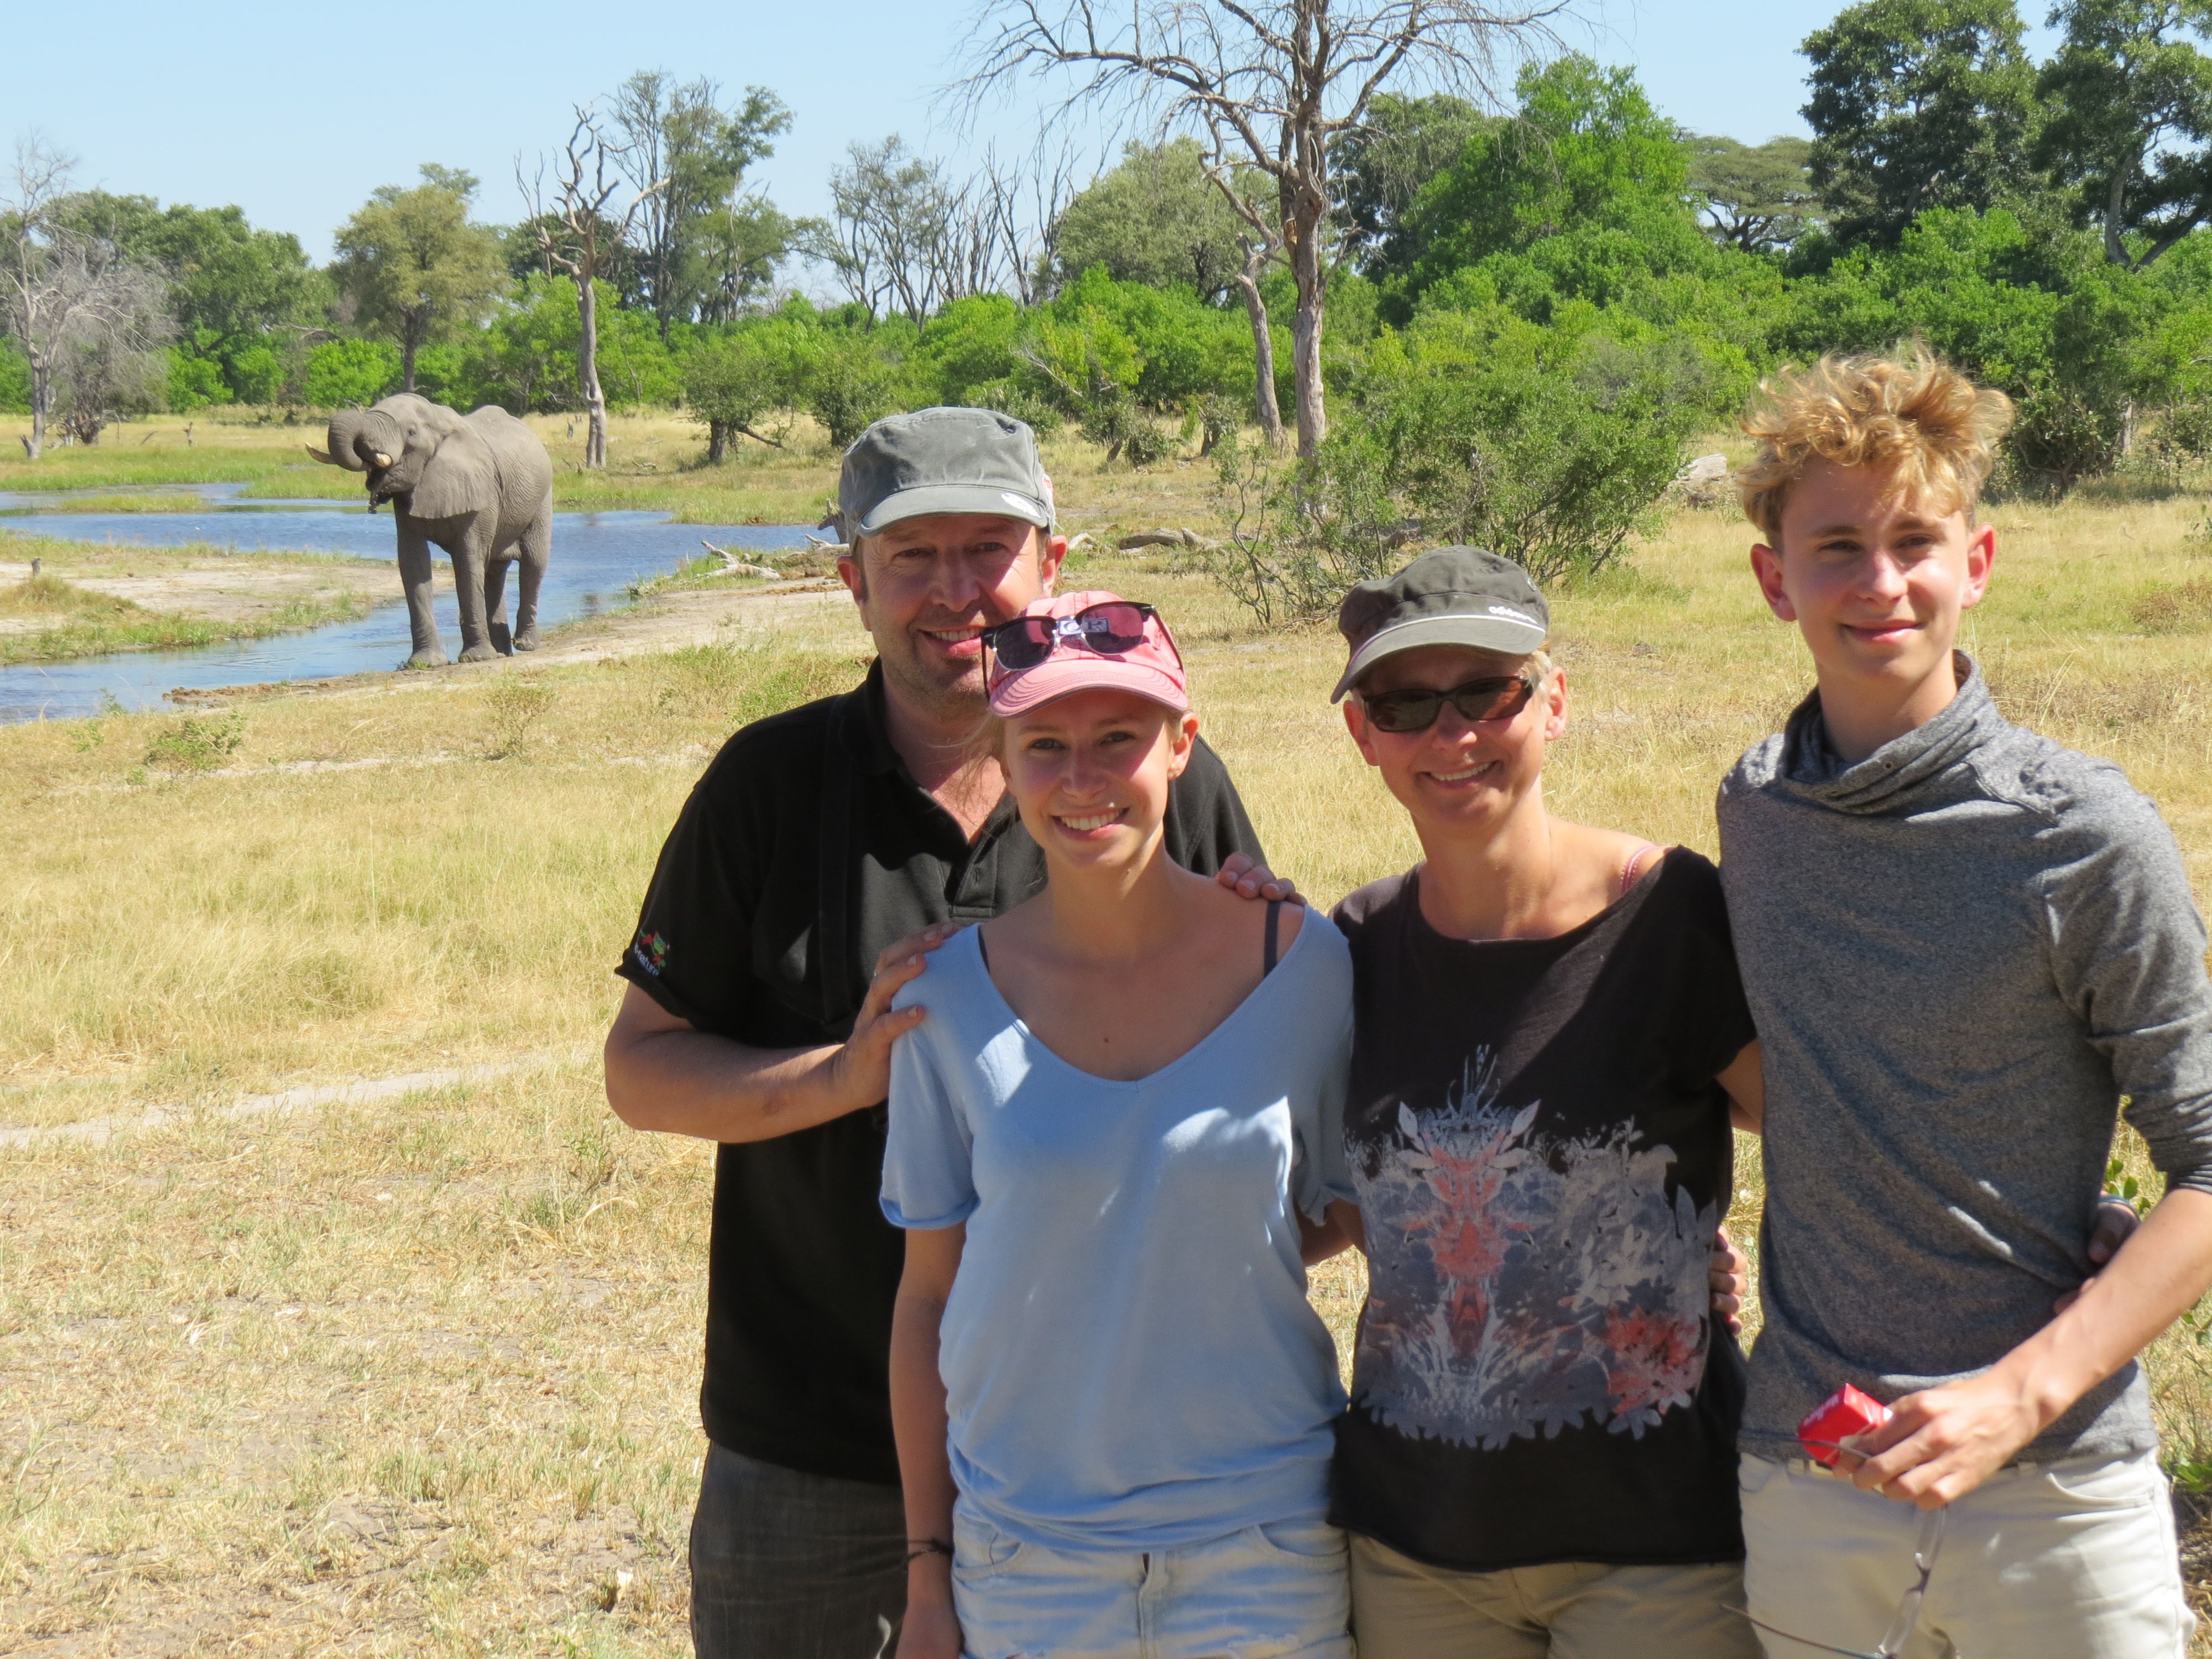 10 years tour operator For Family Reisen - Family Stoll in Africa